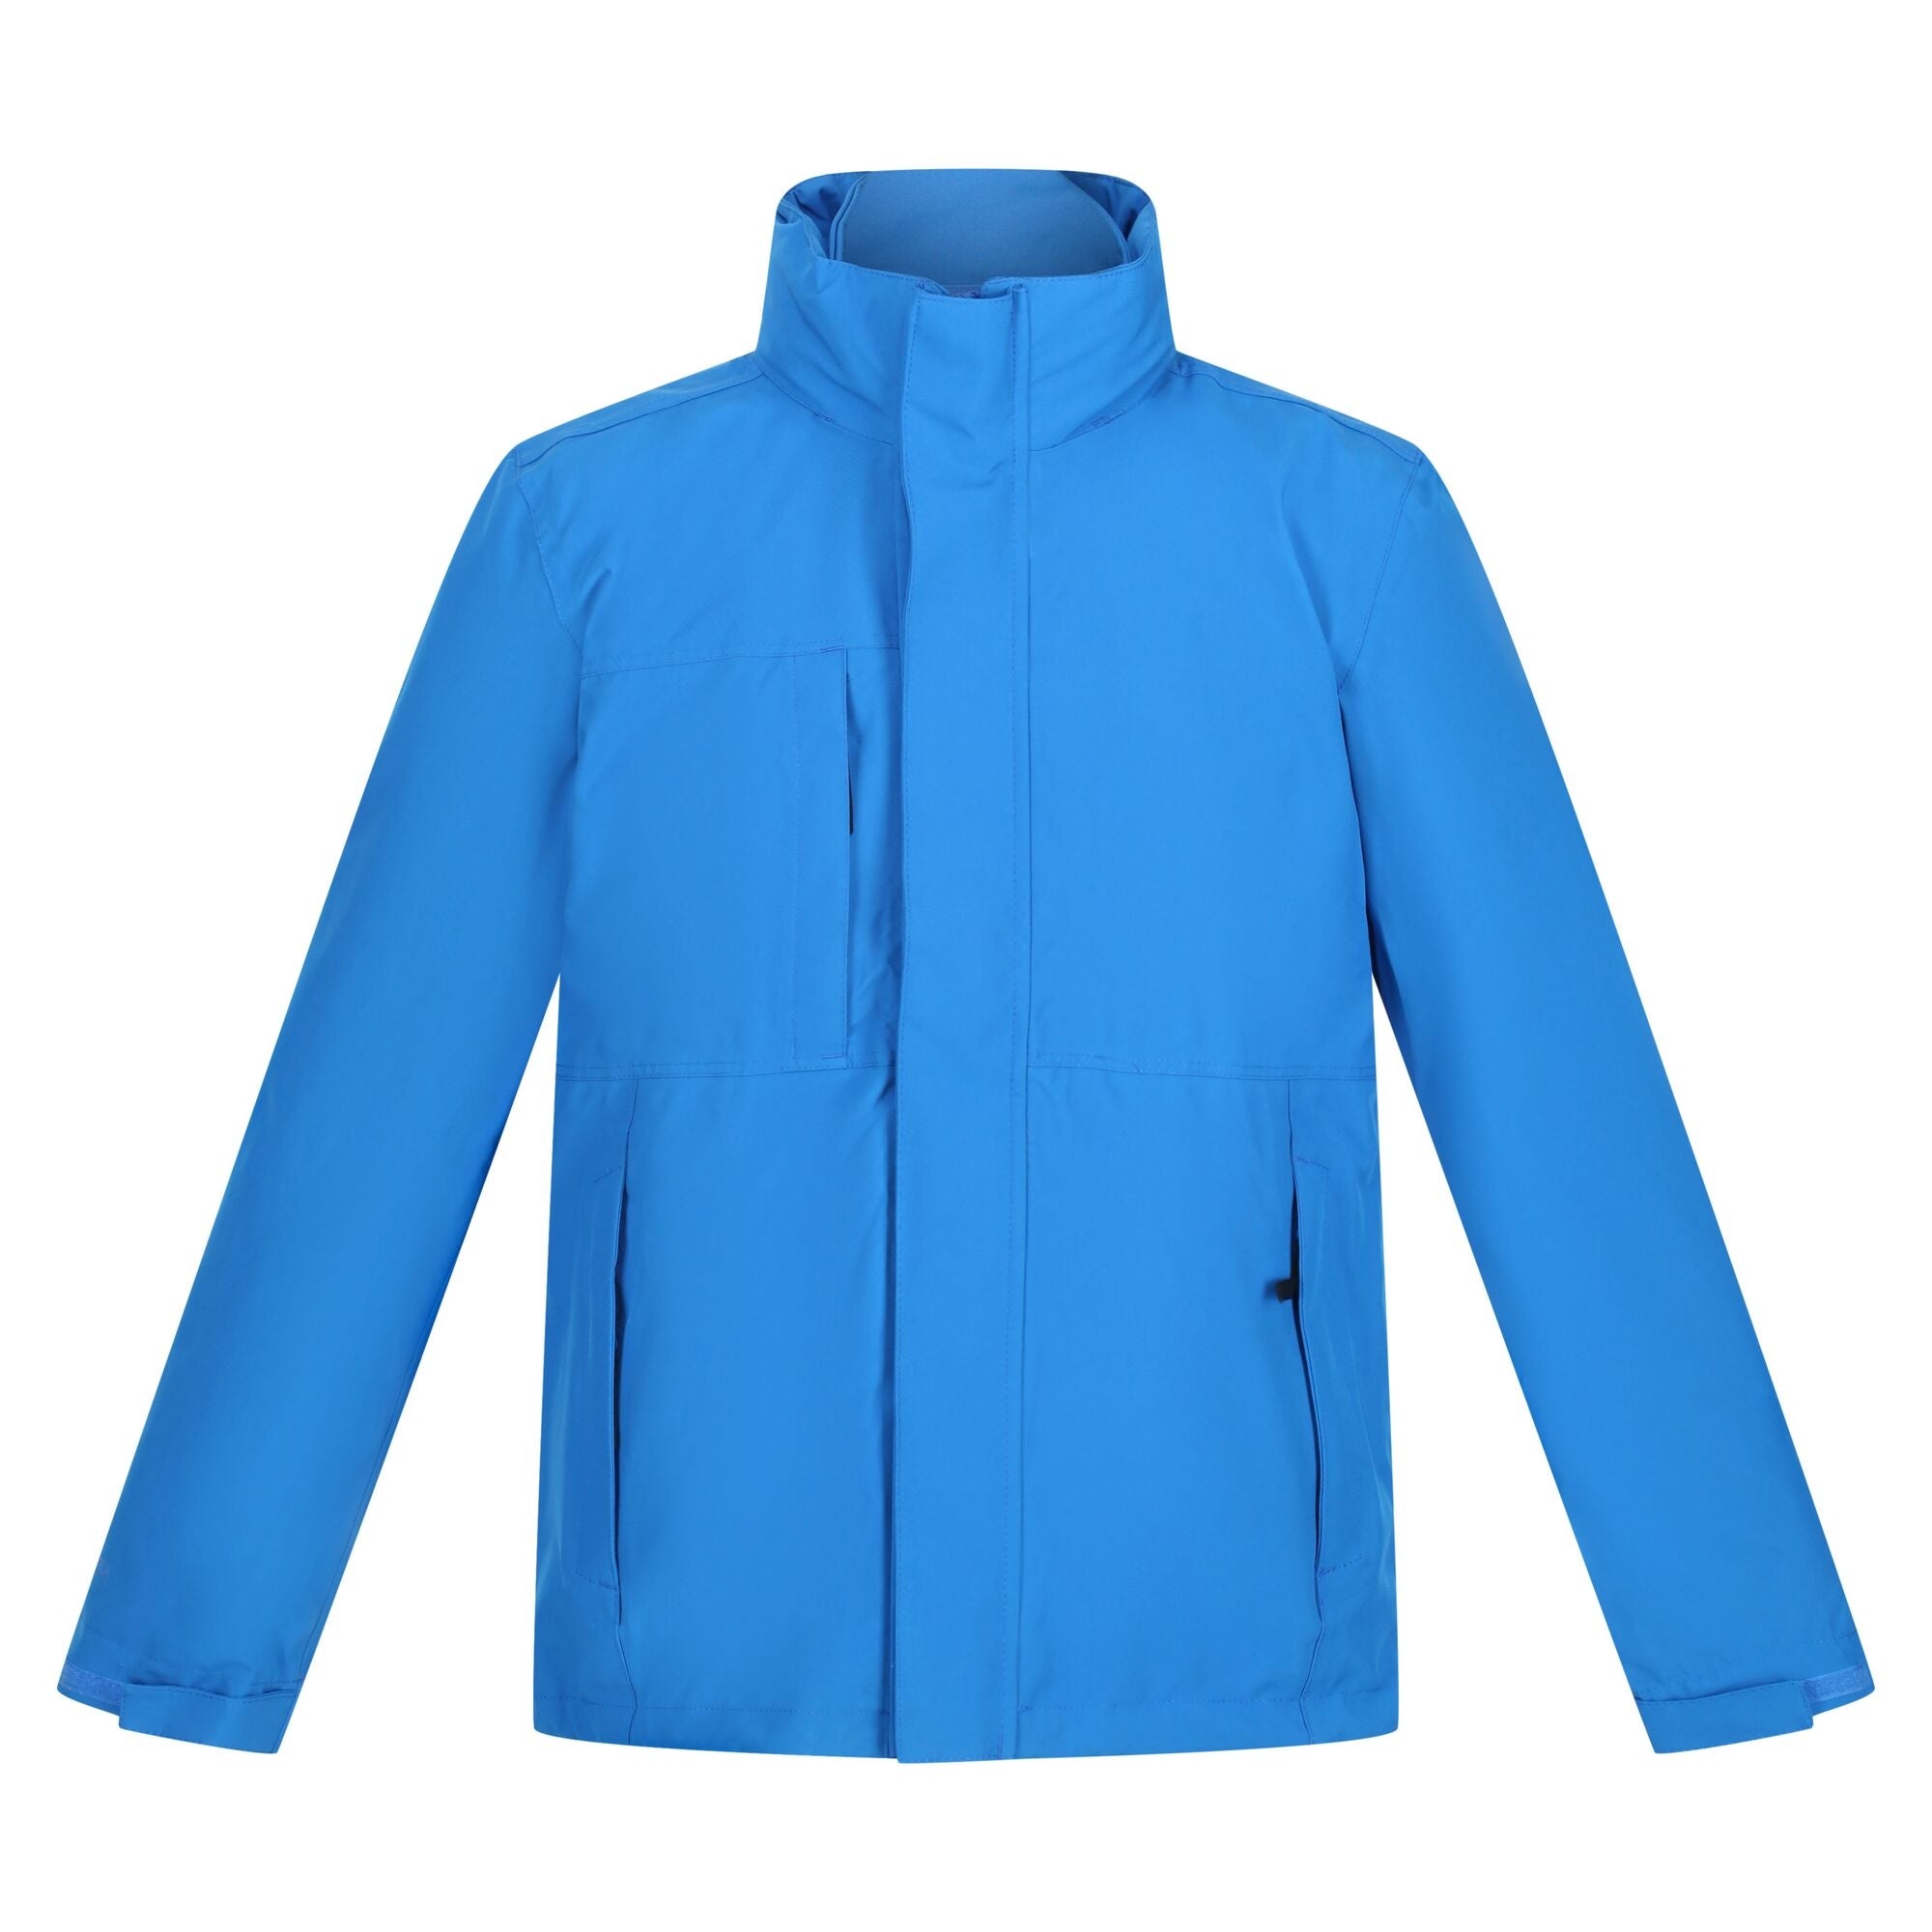 Regatta Kingsley 3in1 Waterproof Jacket - Oxford Blue/Oxford Blue